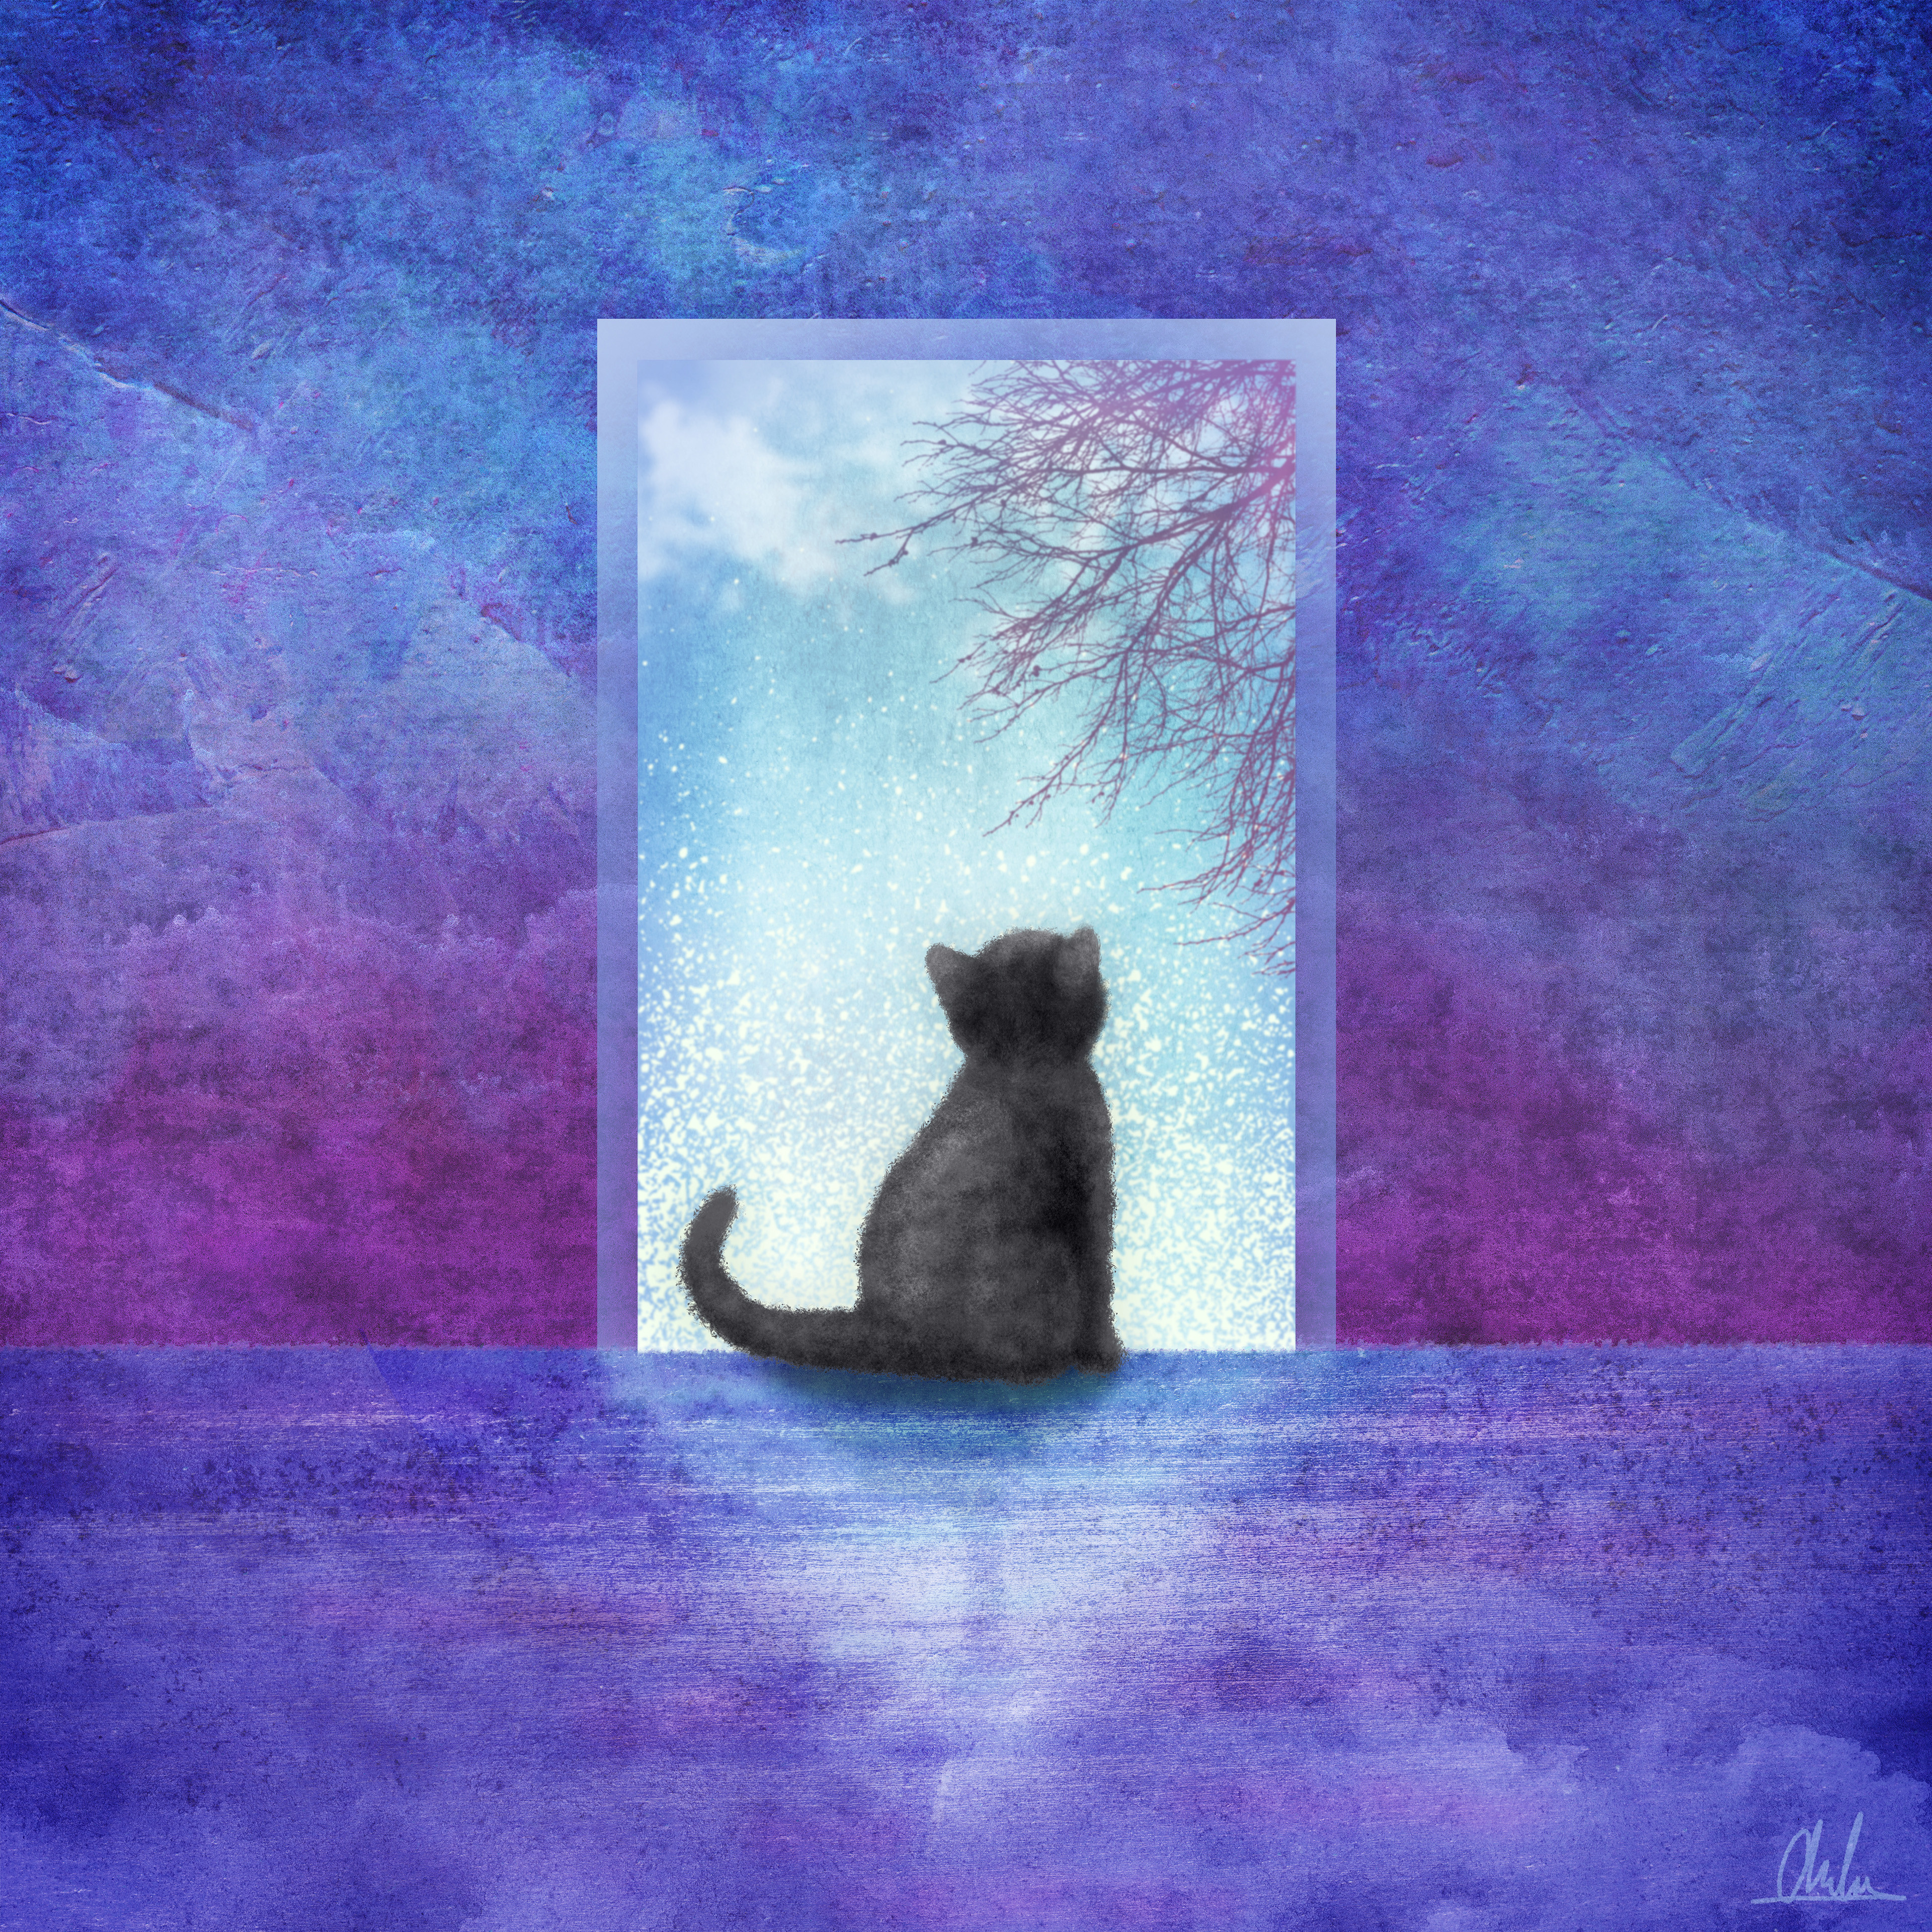 Kitten Dreams - full illustration